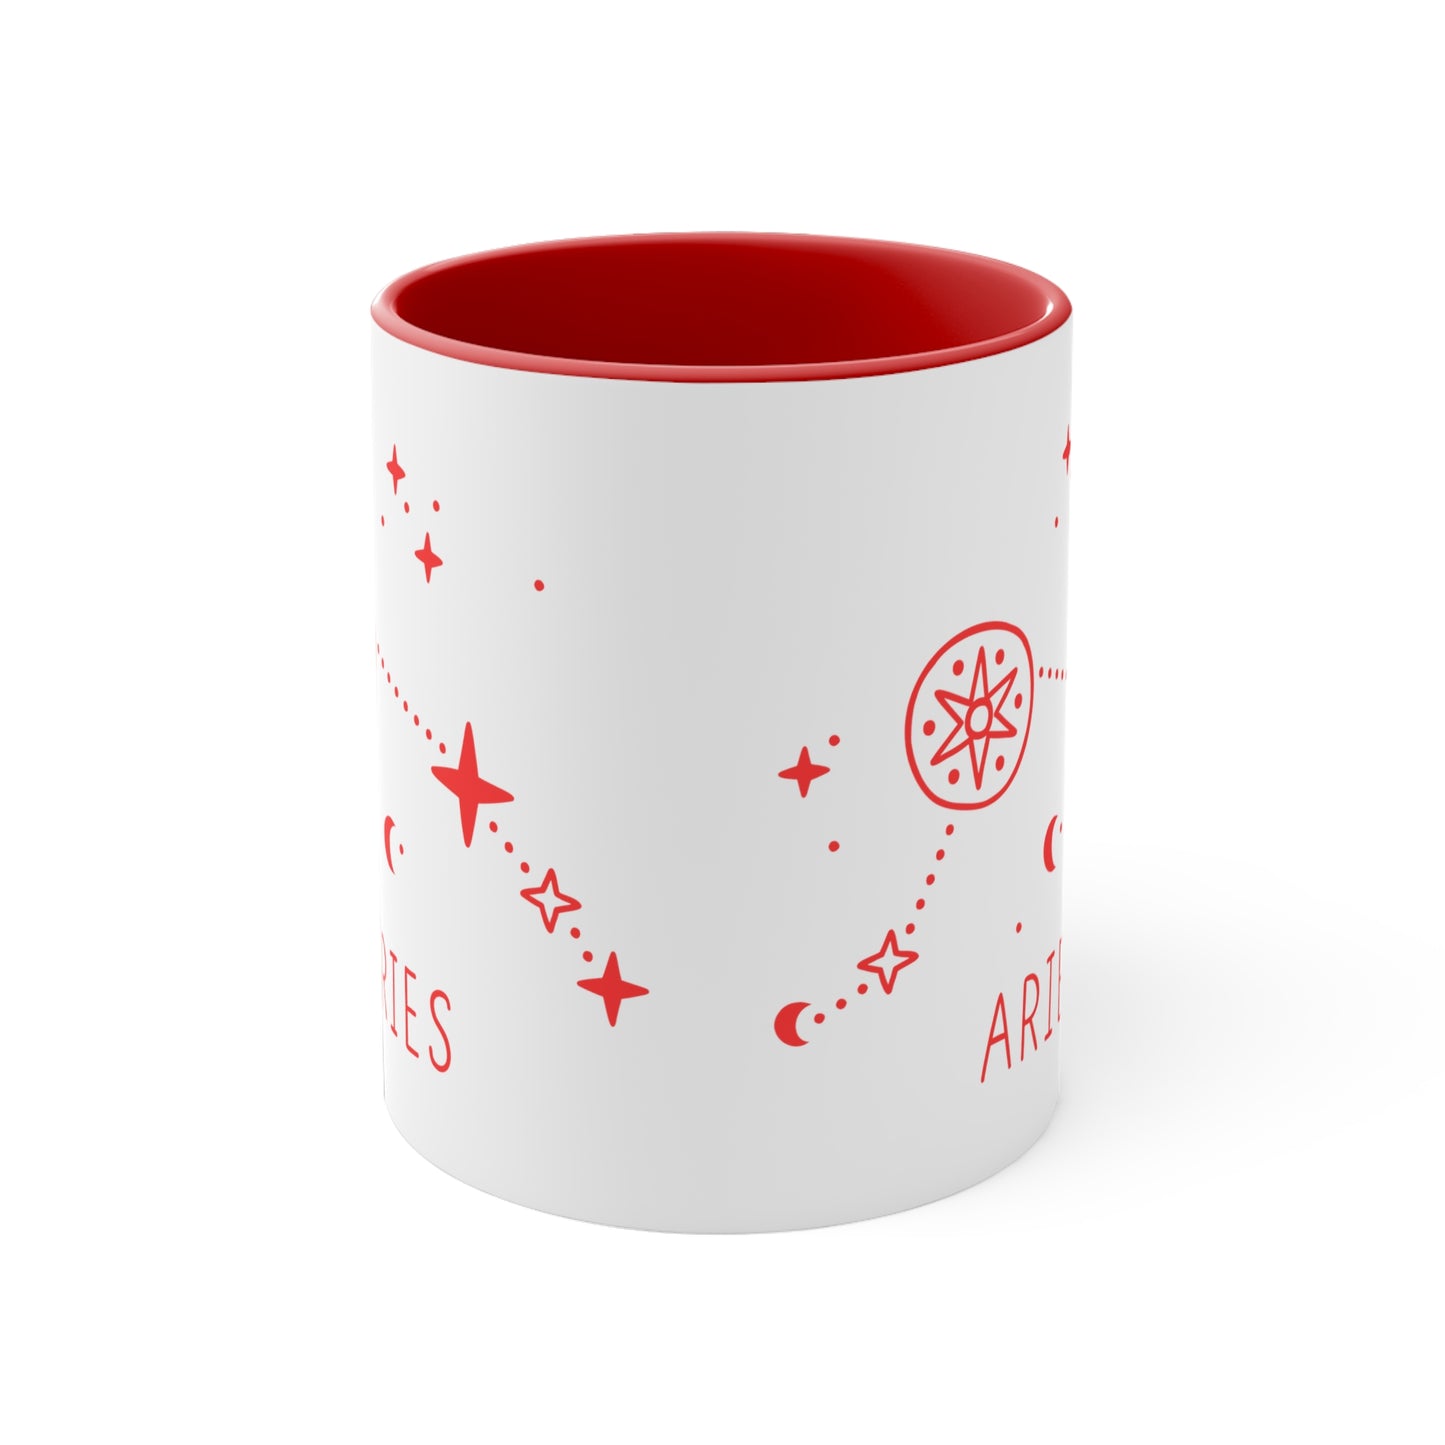 Aries constellation coffee mug